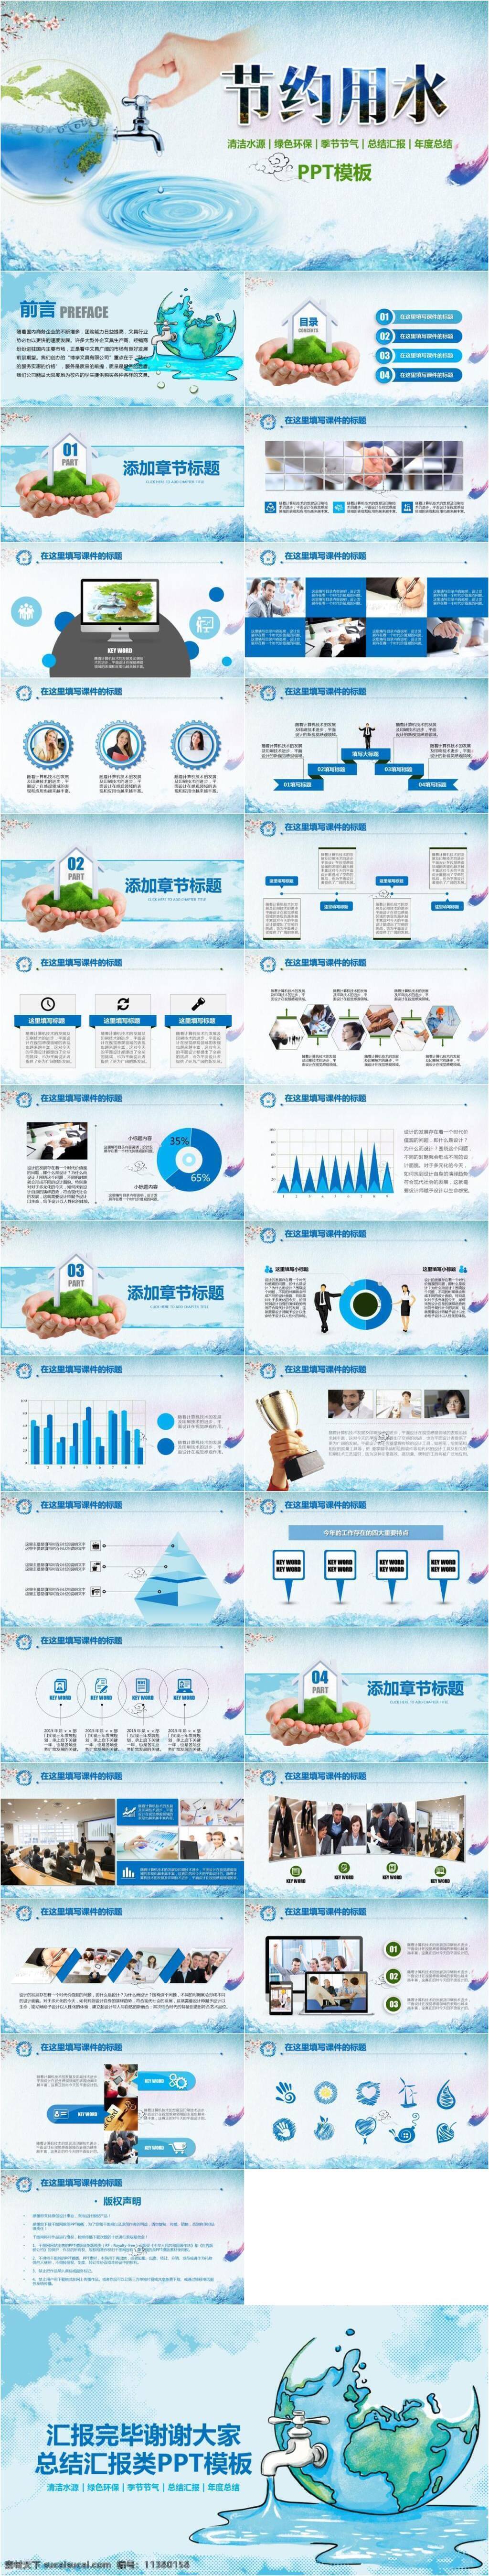 蓝色 公益 环保 节约 用水 专题 报道 模板 ppt模板 公益宣传 工作总结 计划 蓝色简约 中国风